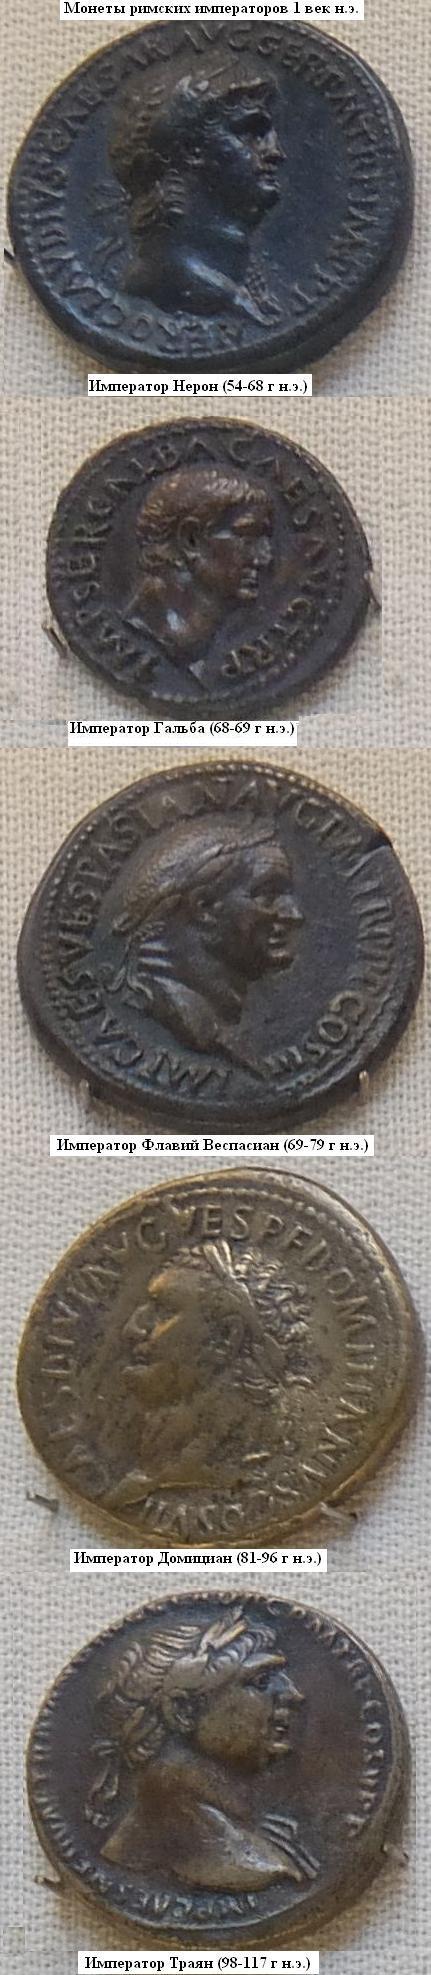 Римские императоры второй половины 1 века н.э. Монеты в Эрмитаже. 1 века.  Фото Лимарева В.Н. 